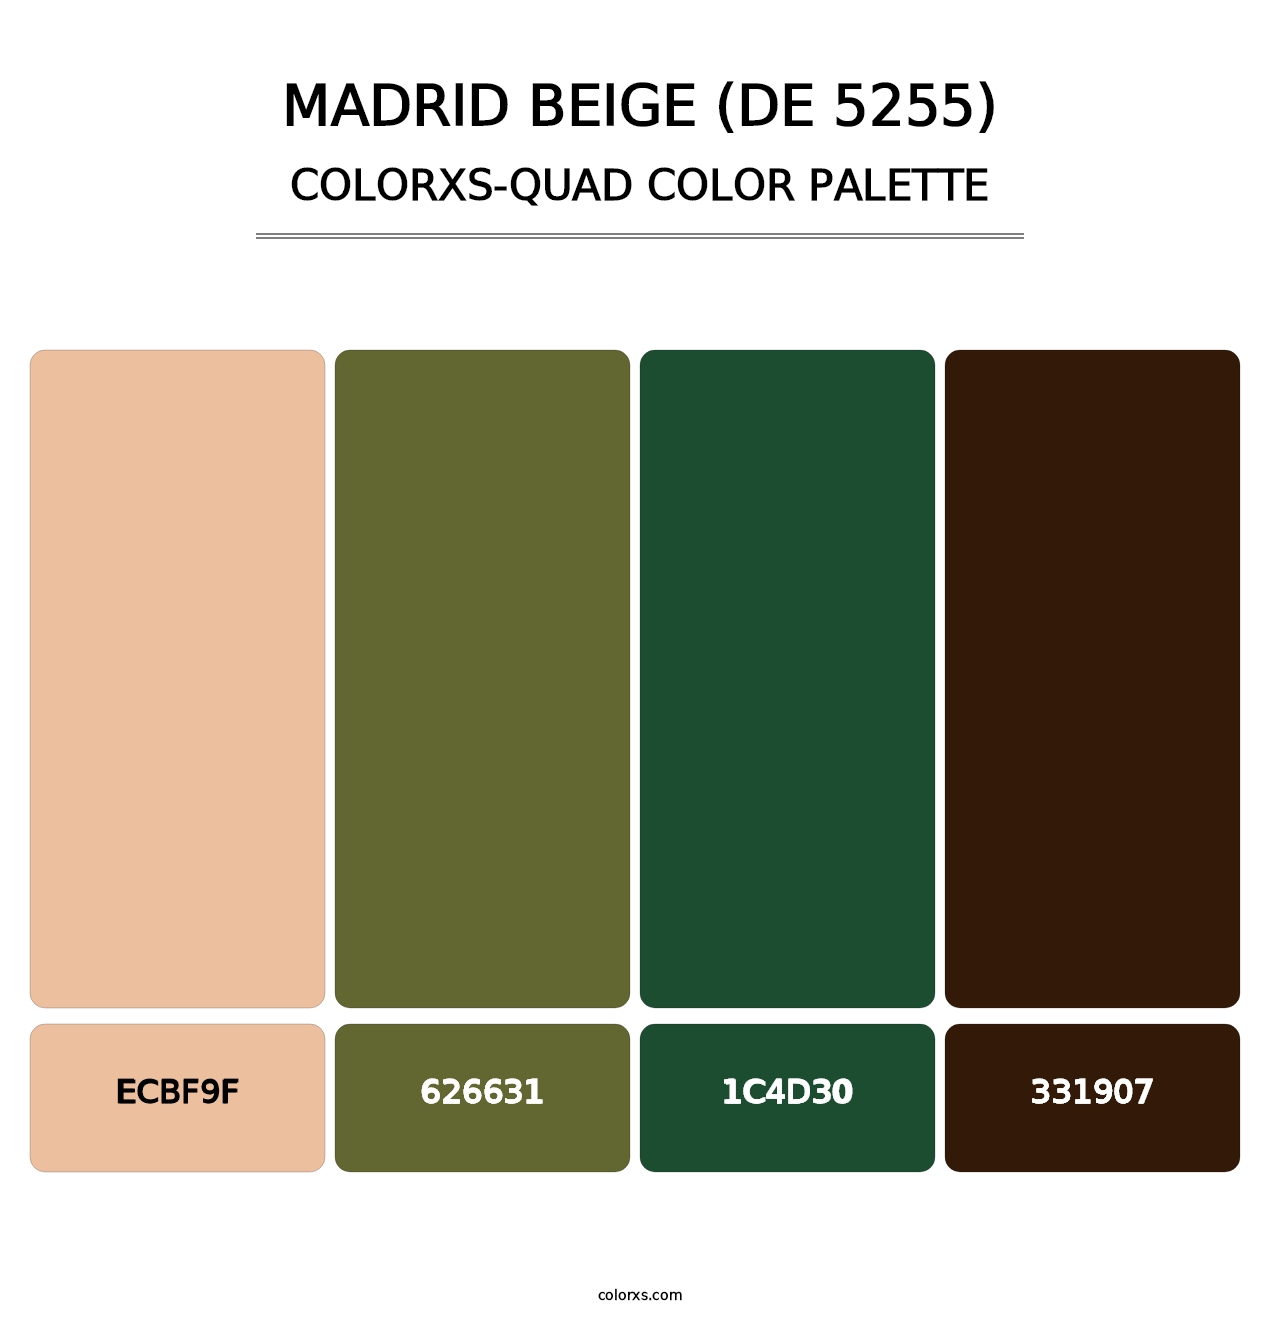 Madrid Beige (DE 5255) - Colorxs Quad Palette